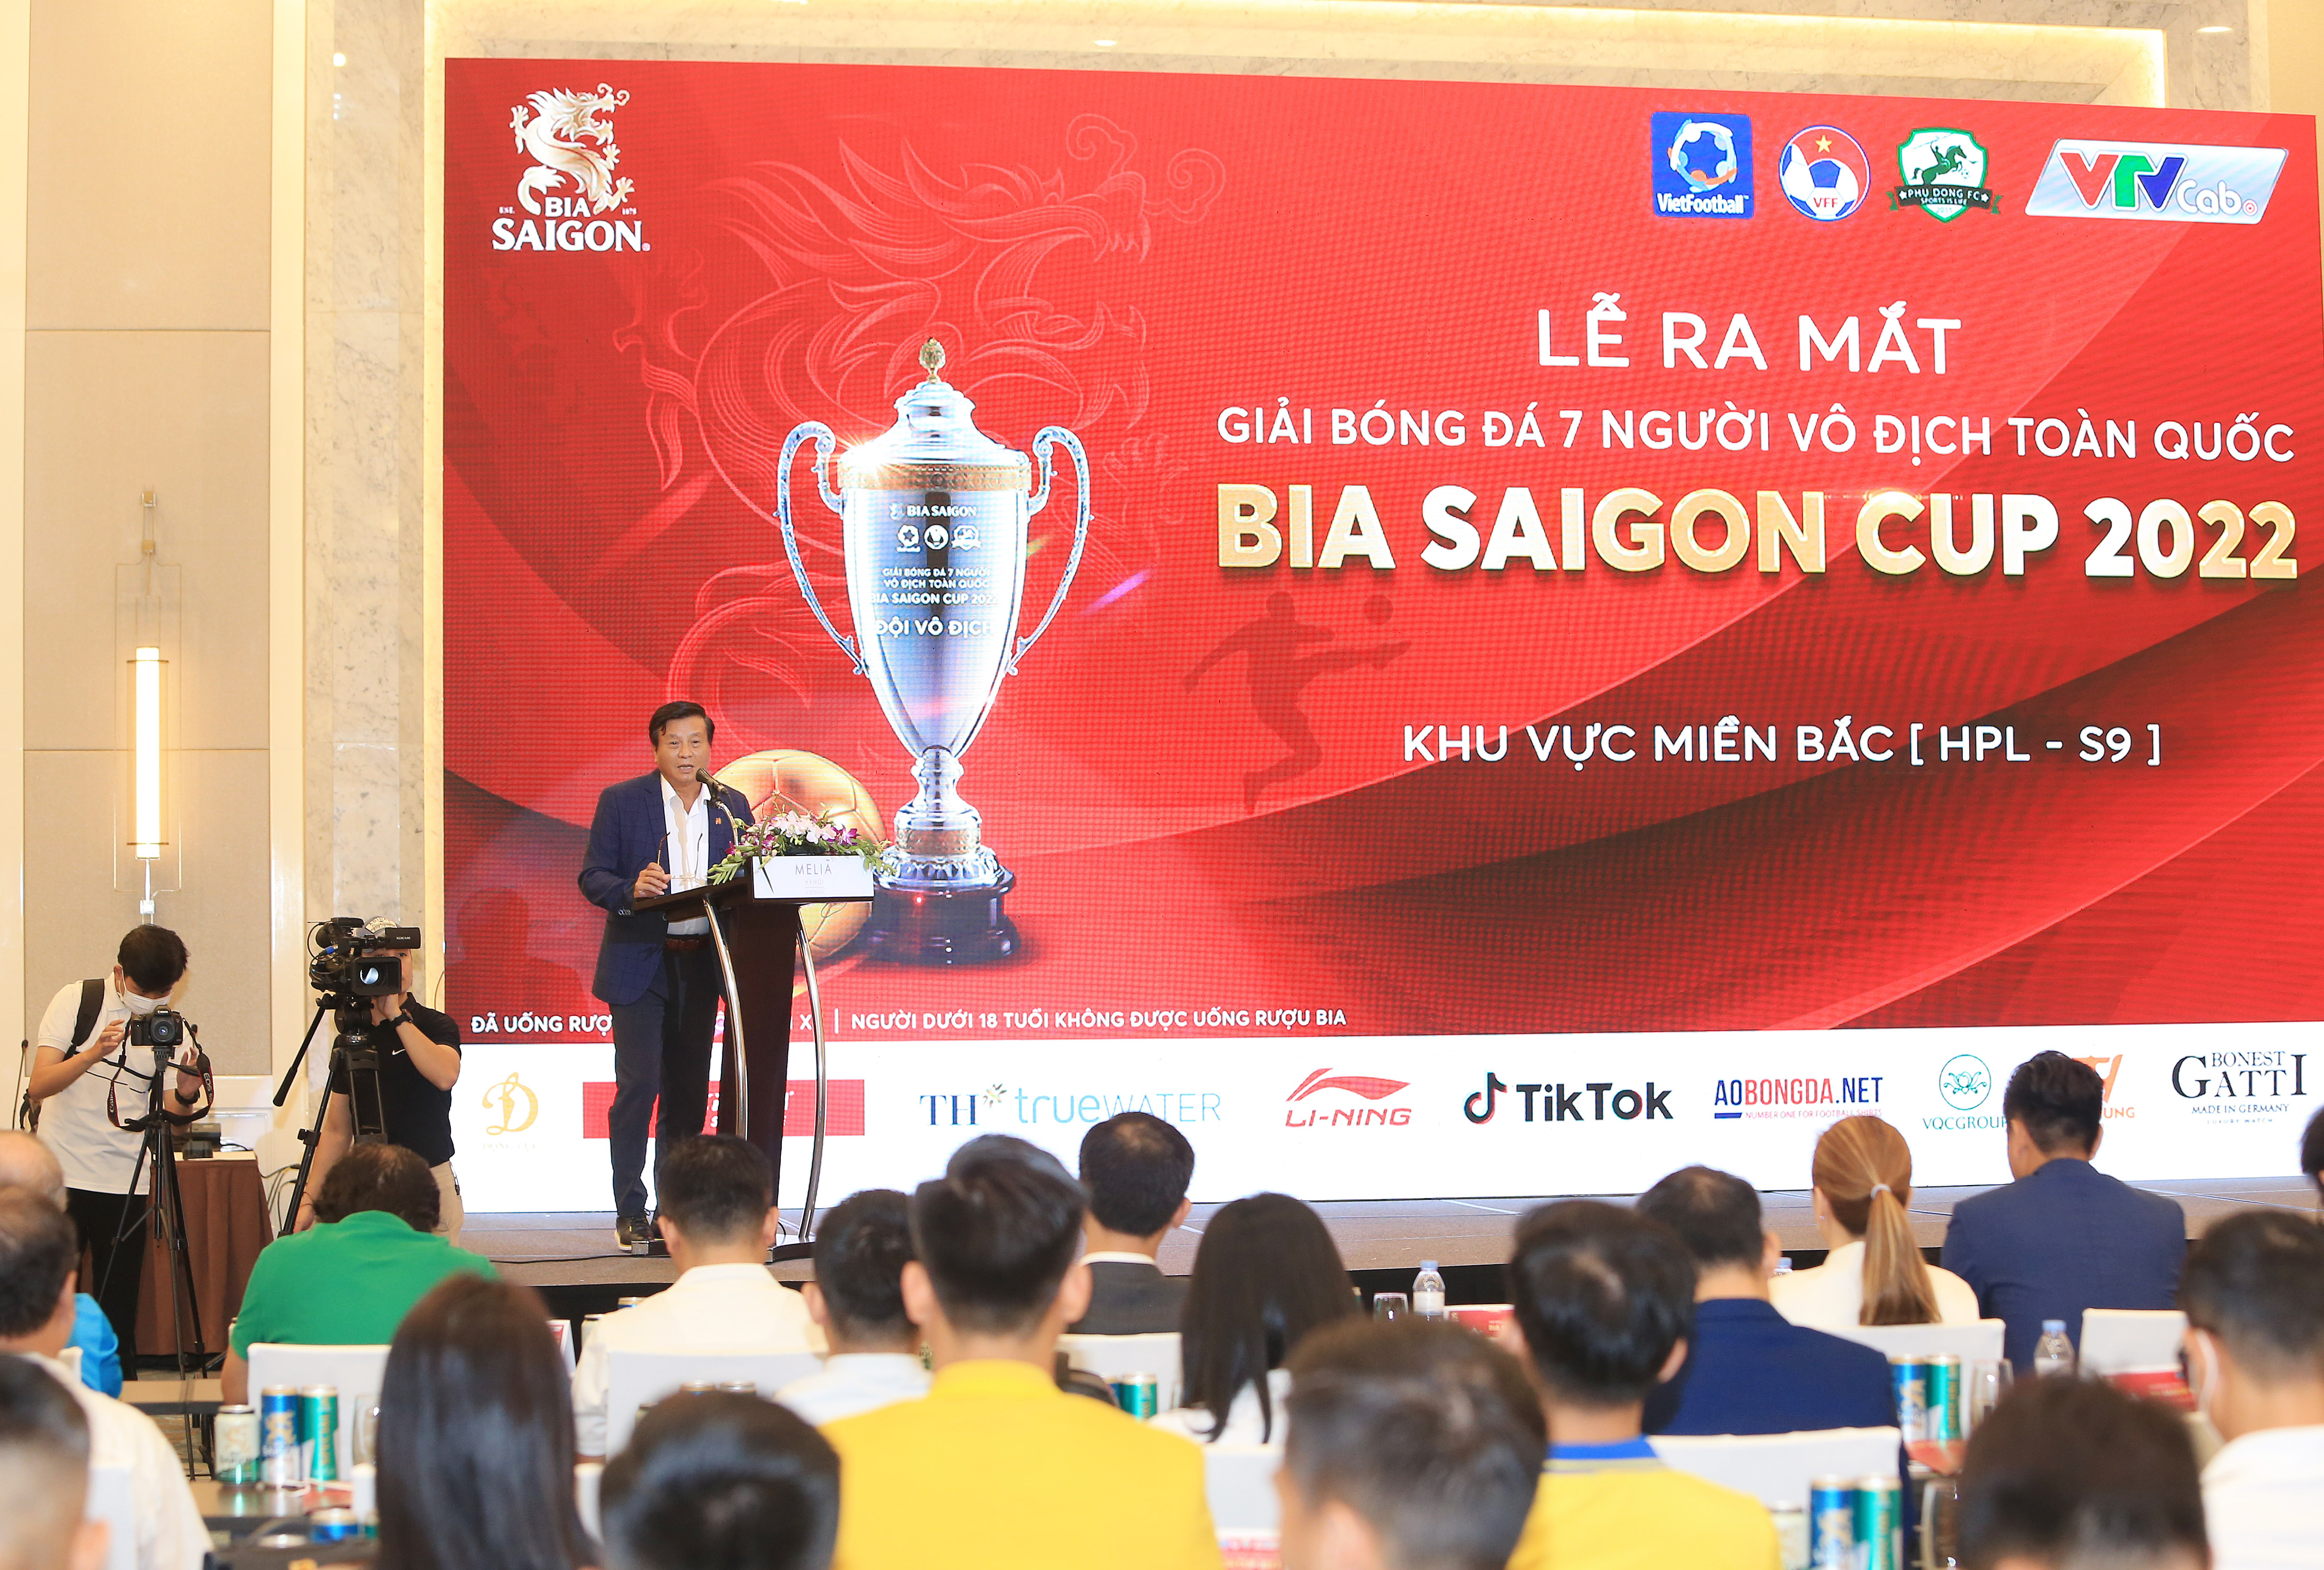 Phó Chủ tịch VFF Lê Văn Thành tới dự và phát biểu trong buổi lễ ra mắt Giải bóng đá 7 người vô địch toàn quốc - khu vực miền Bắc (HPL-S9) - Ảnh: Đức Cường 